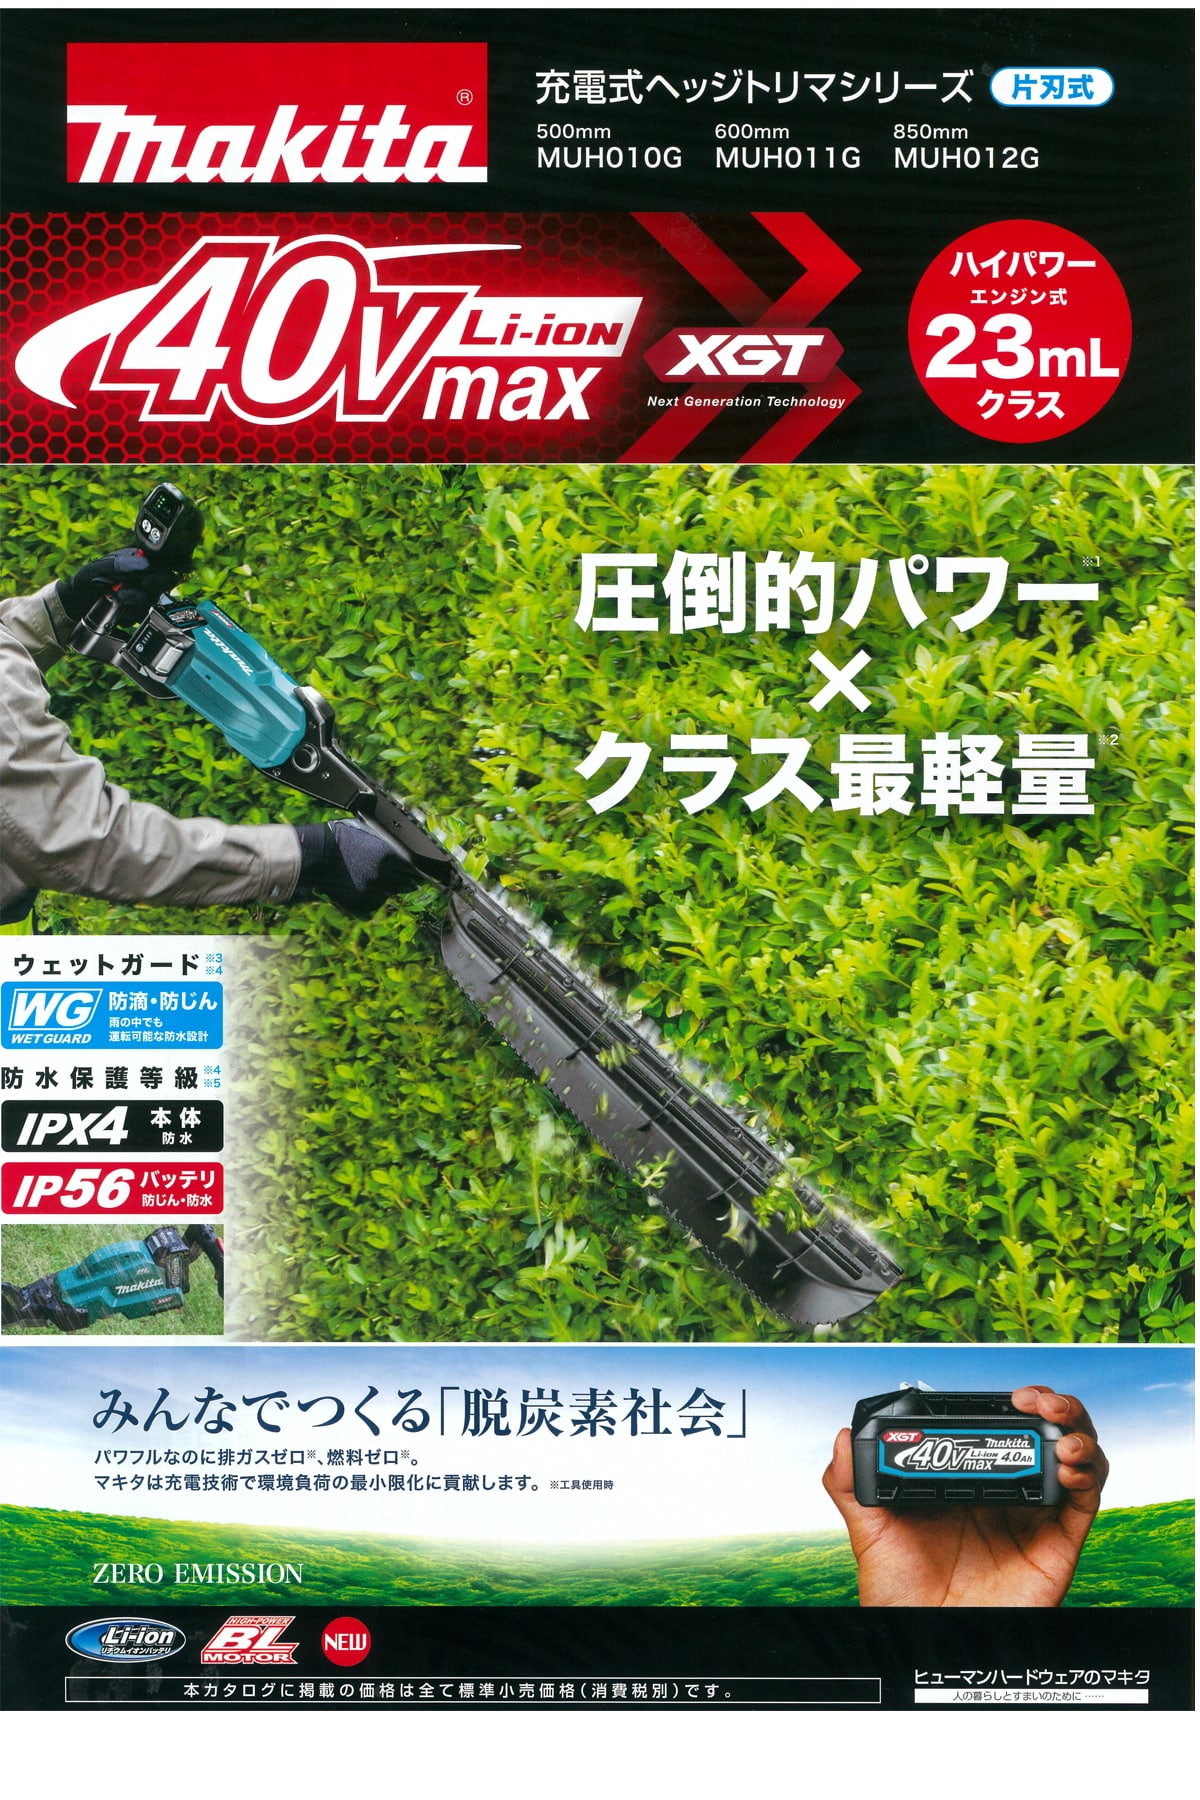 マキタ MUH012GRDX 40Vmax充電式ヘッジトリマ 850mm ウエダ金物【公式サイト】